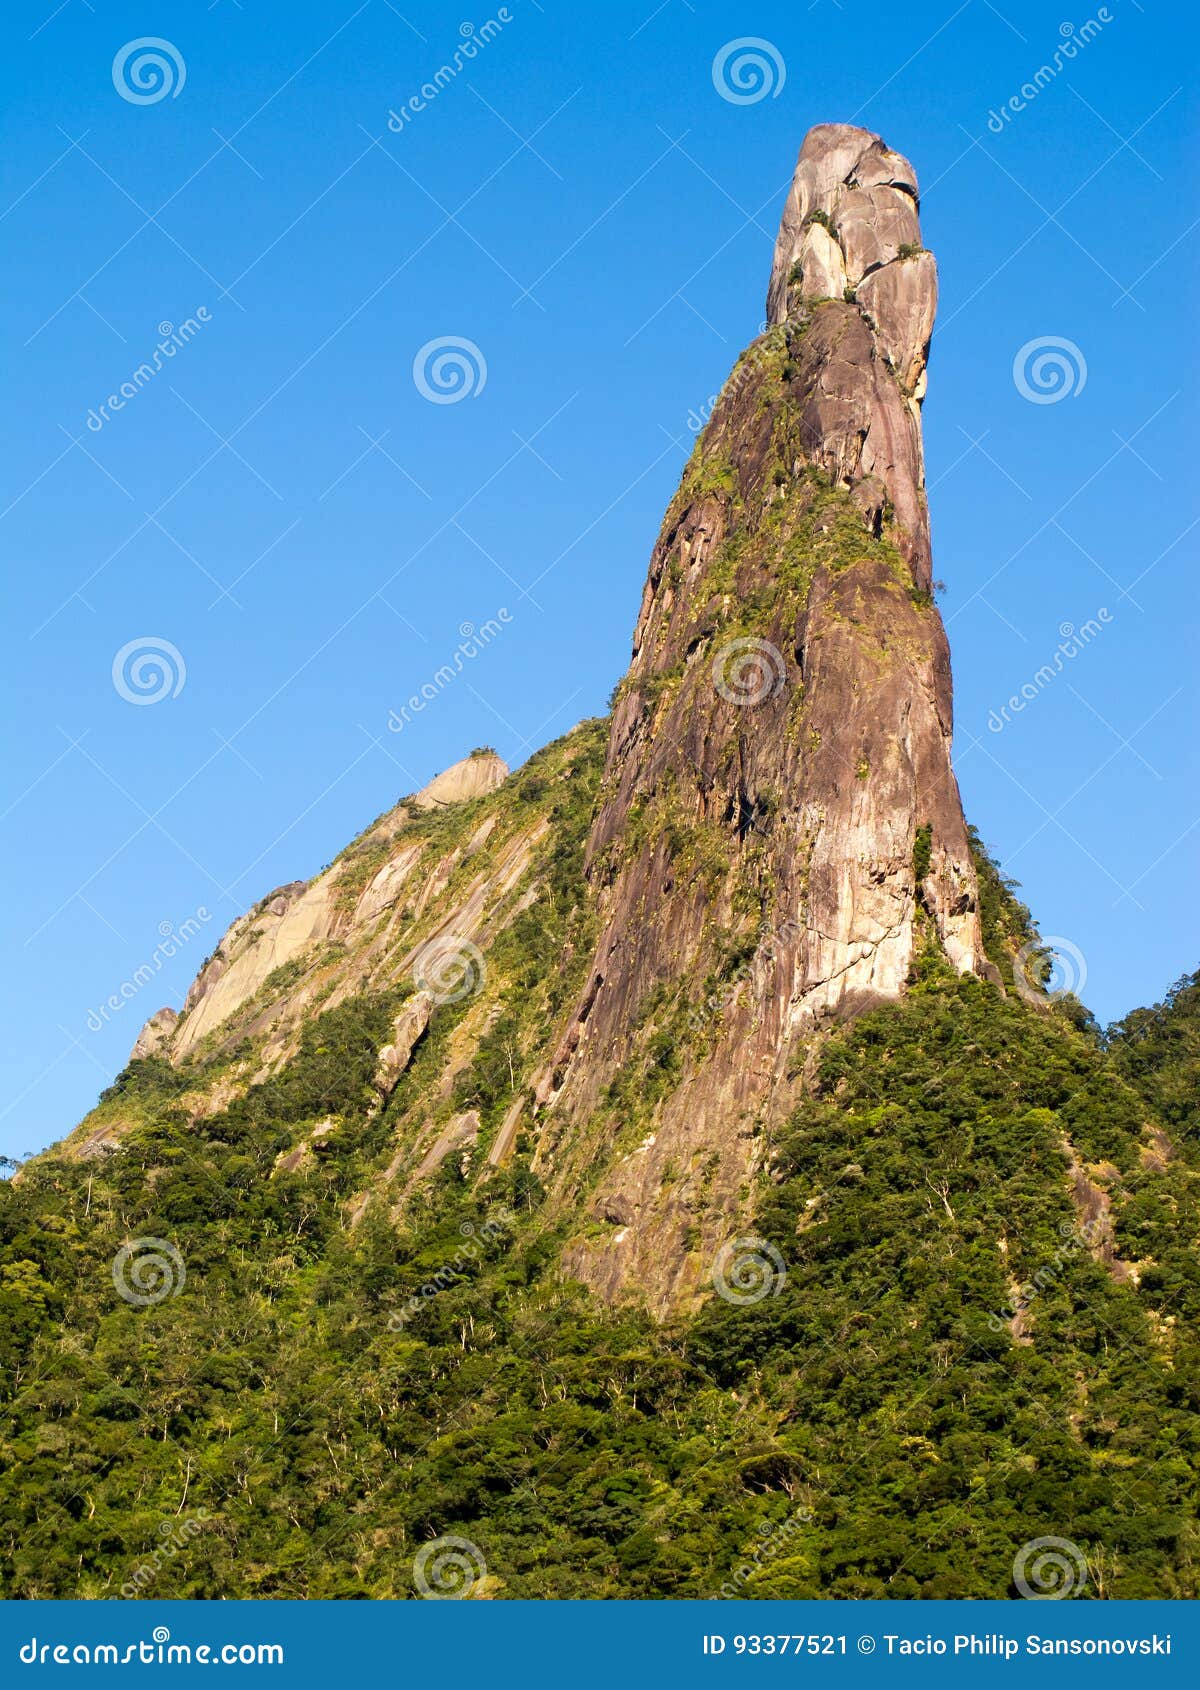 dedo de deus - gods finger mountain in rio de janeiro - brazil